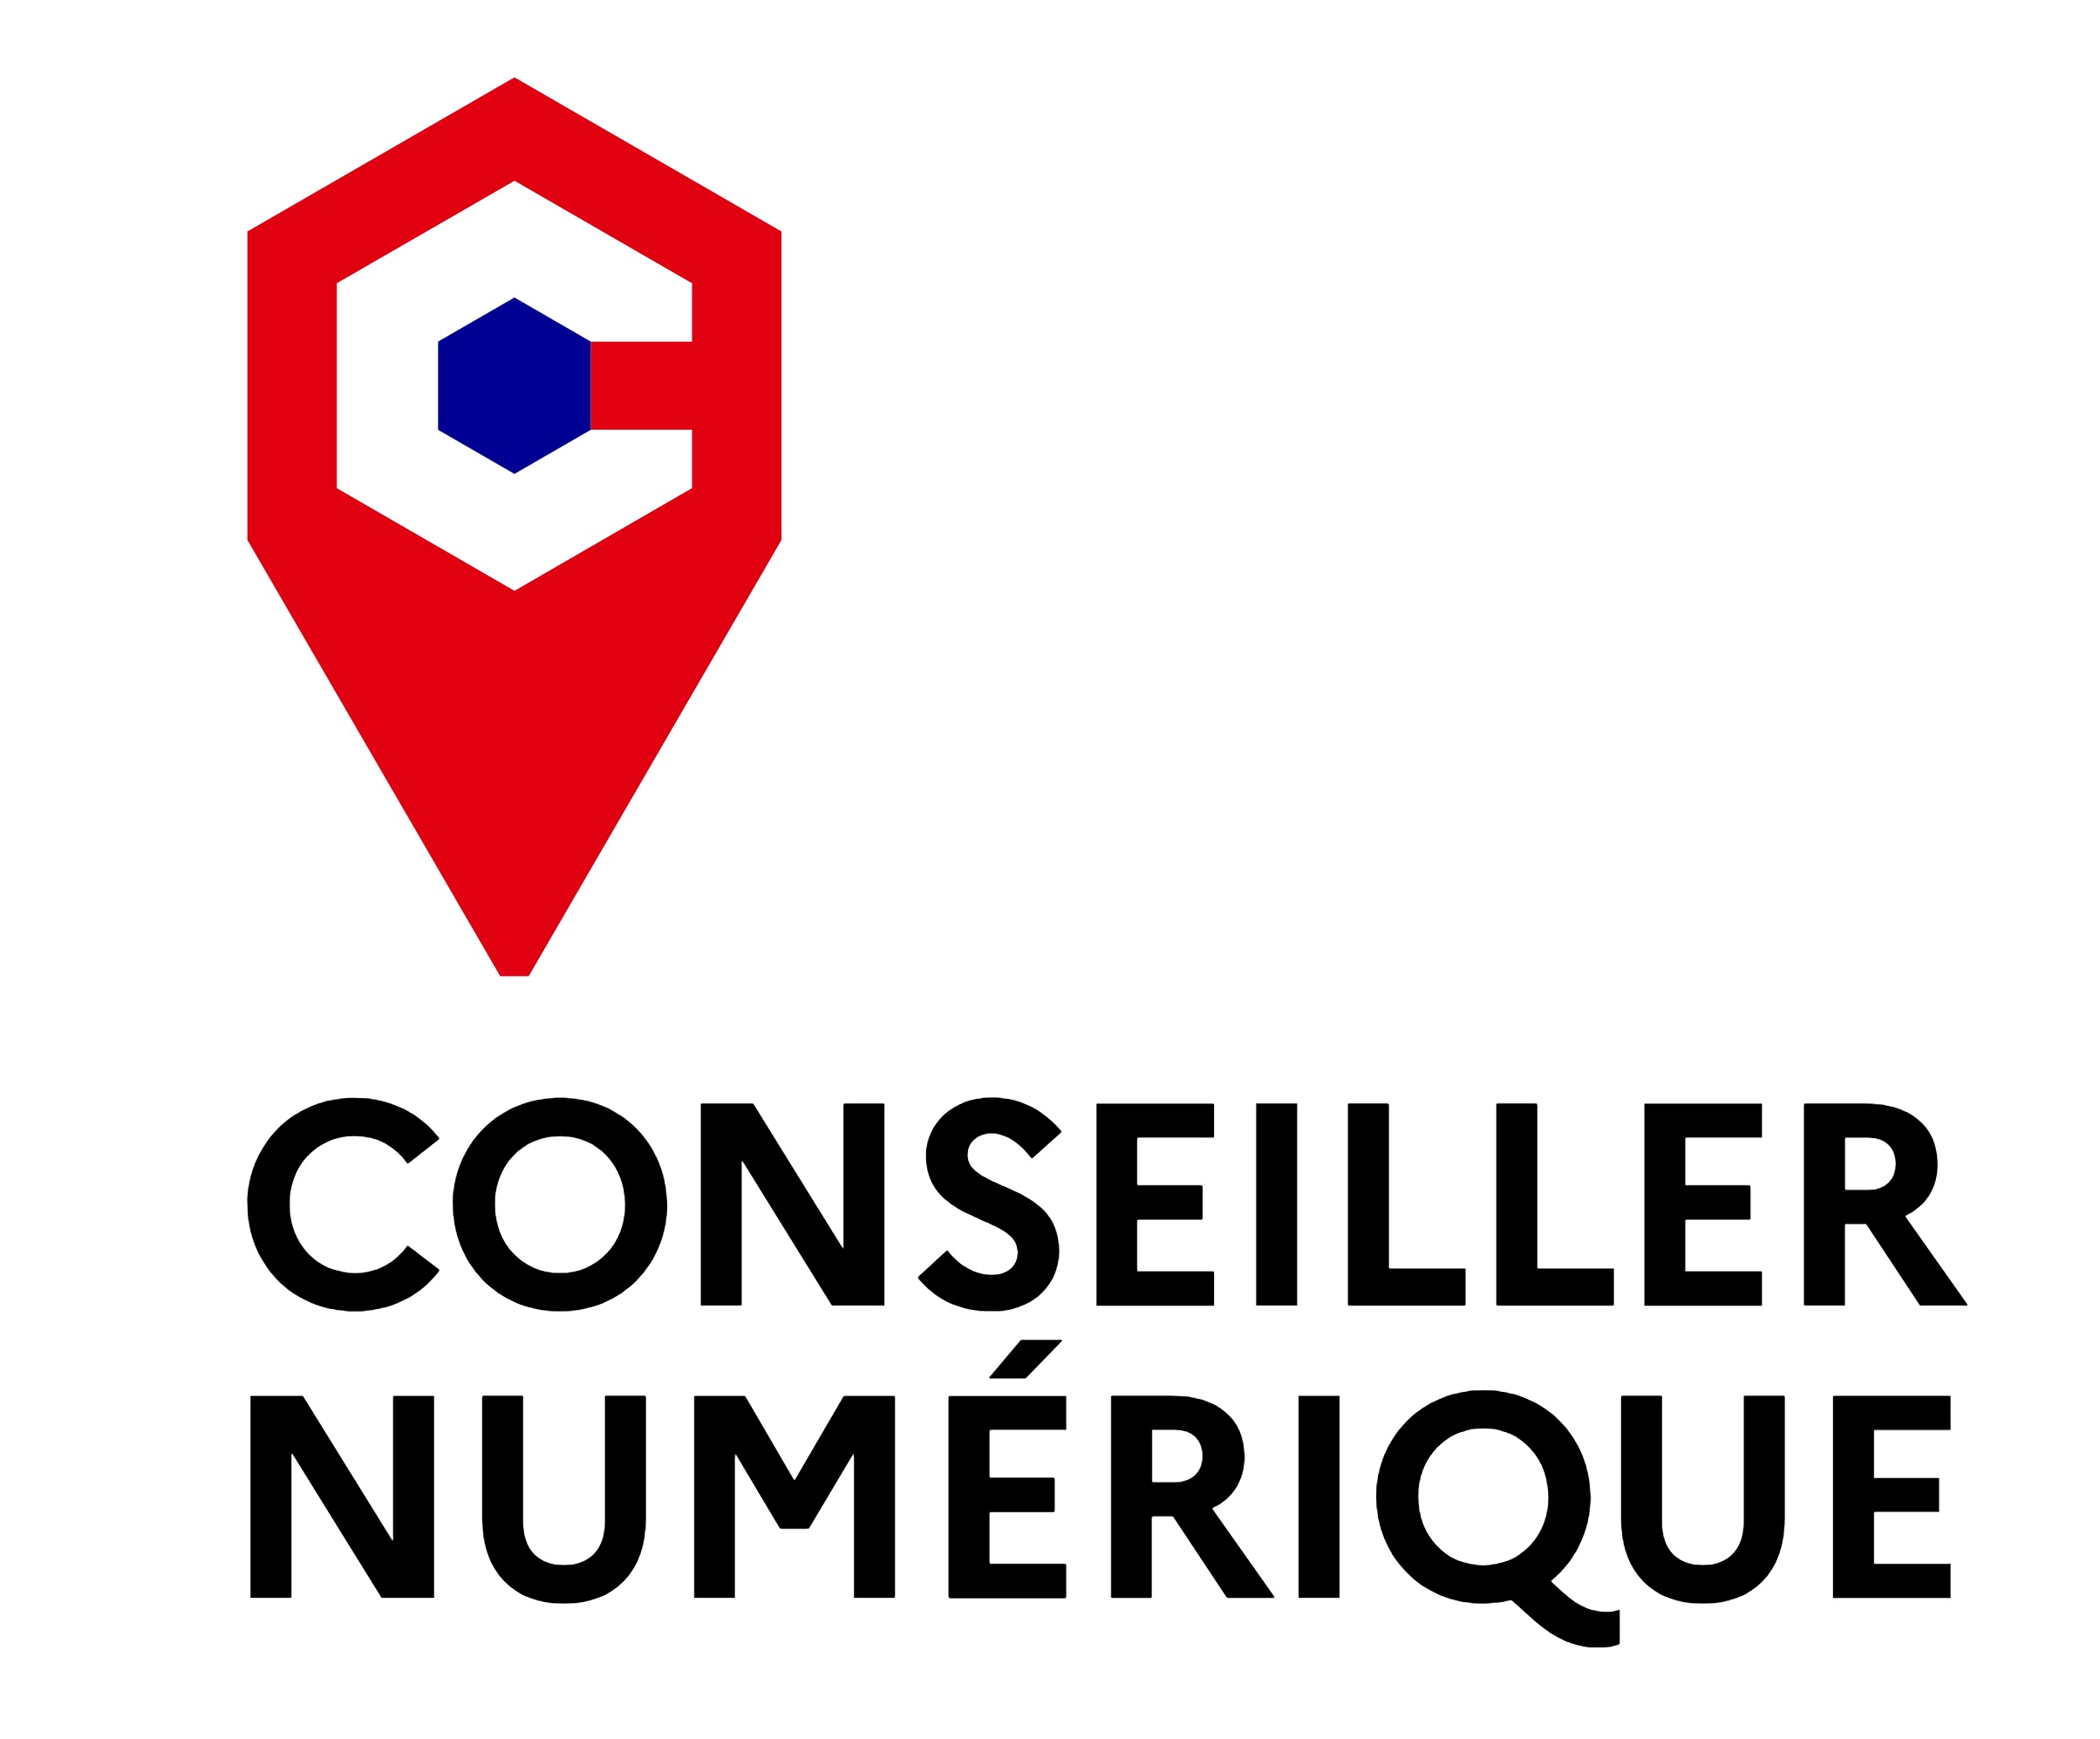 logo conseiller numerique